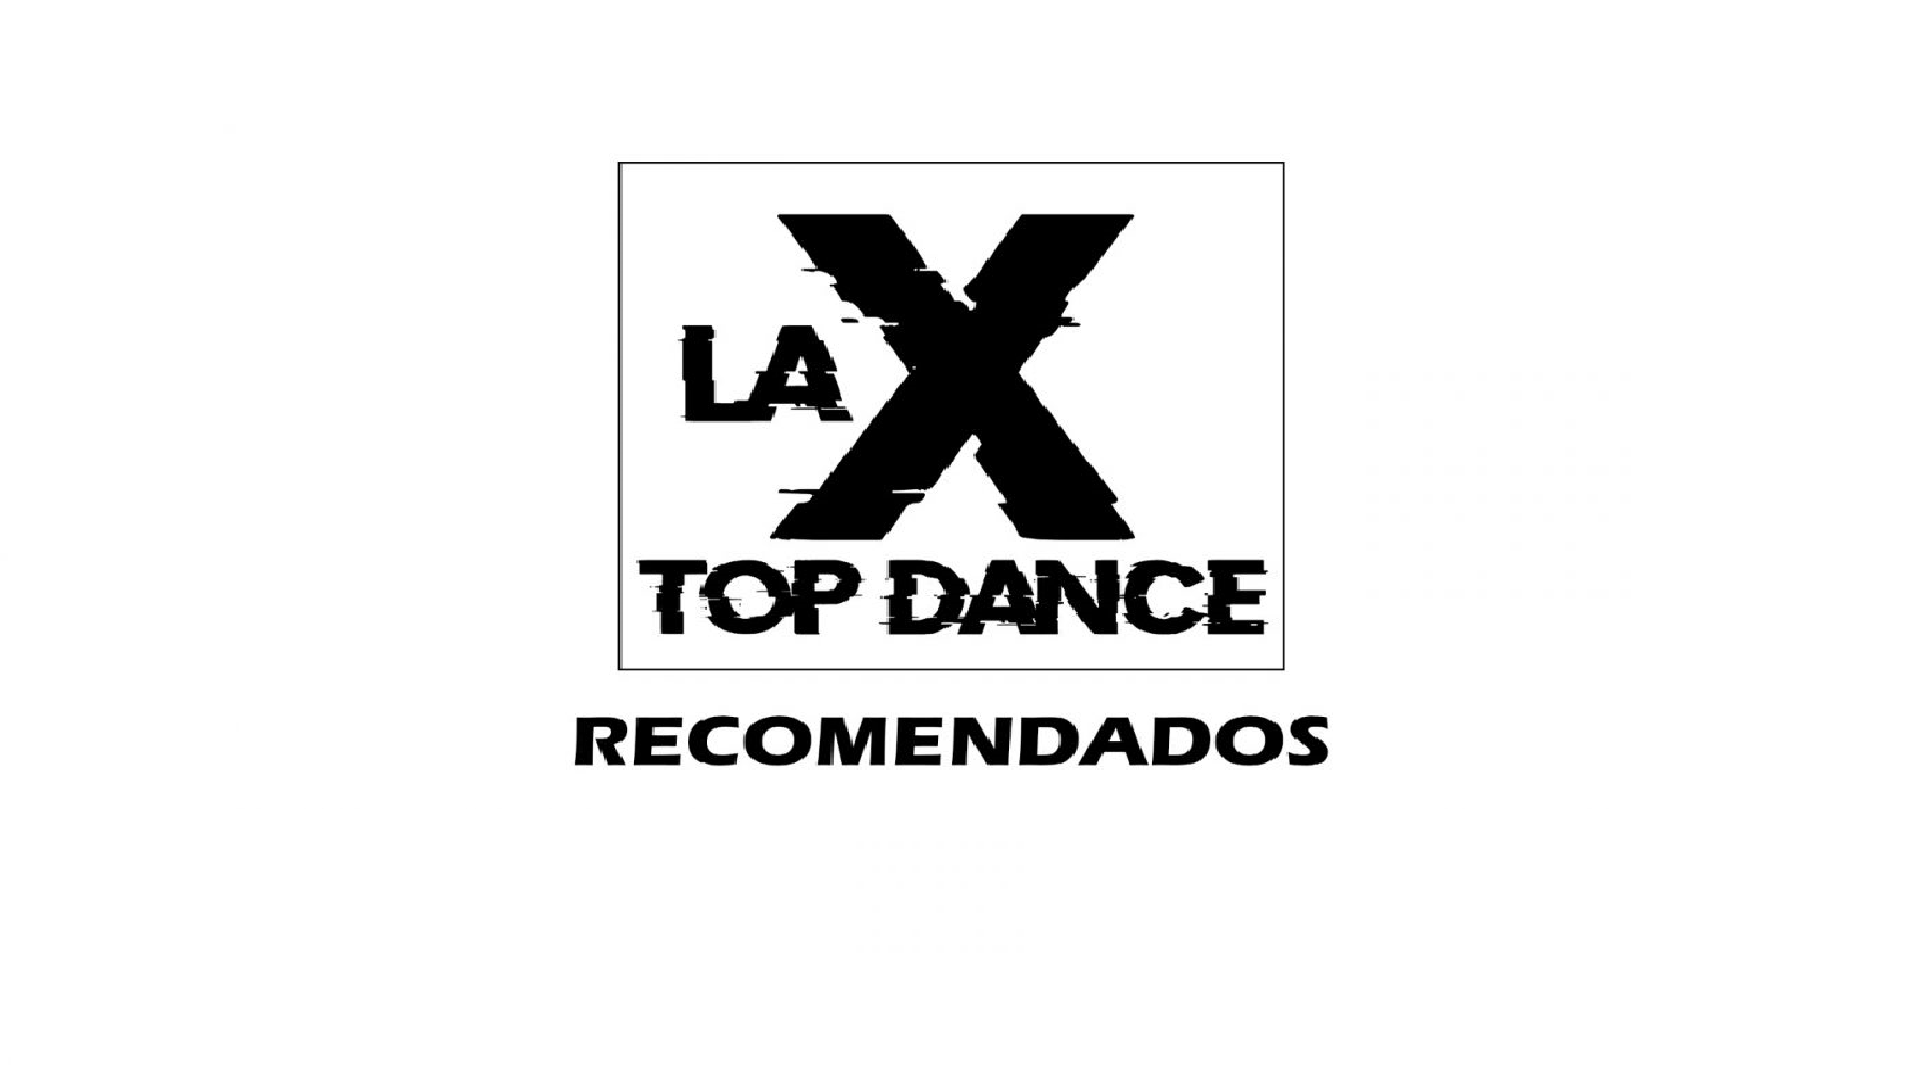 RECOMENDADOS LA X TOP DANCE DICIEMBRE 17